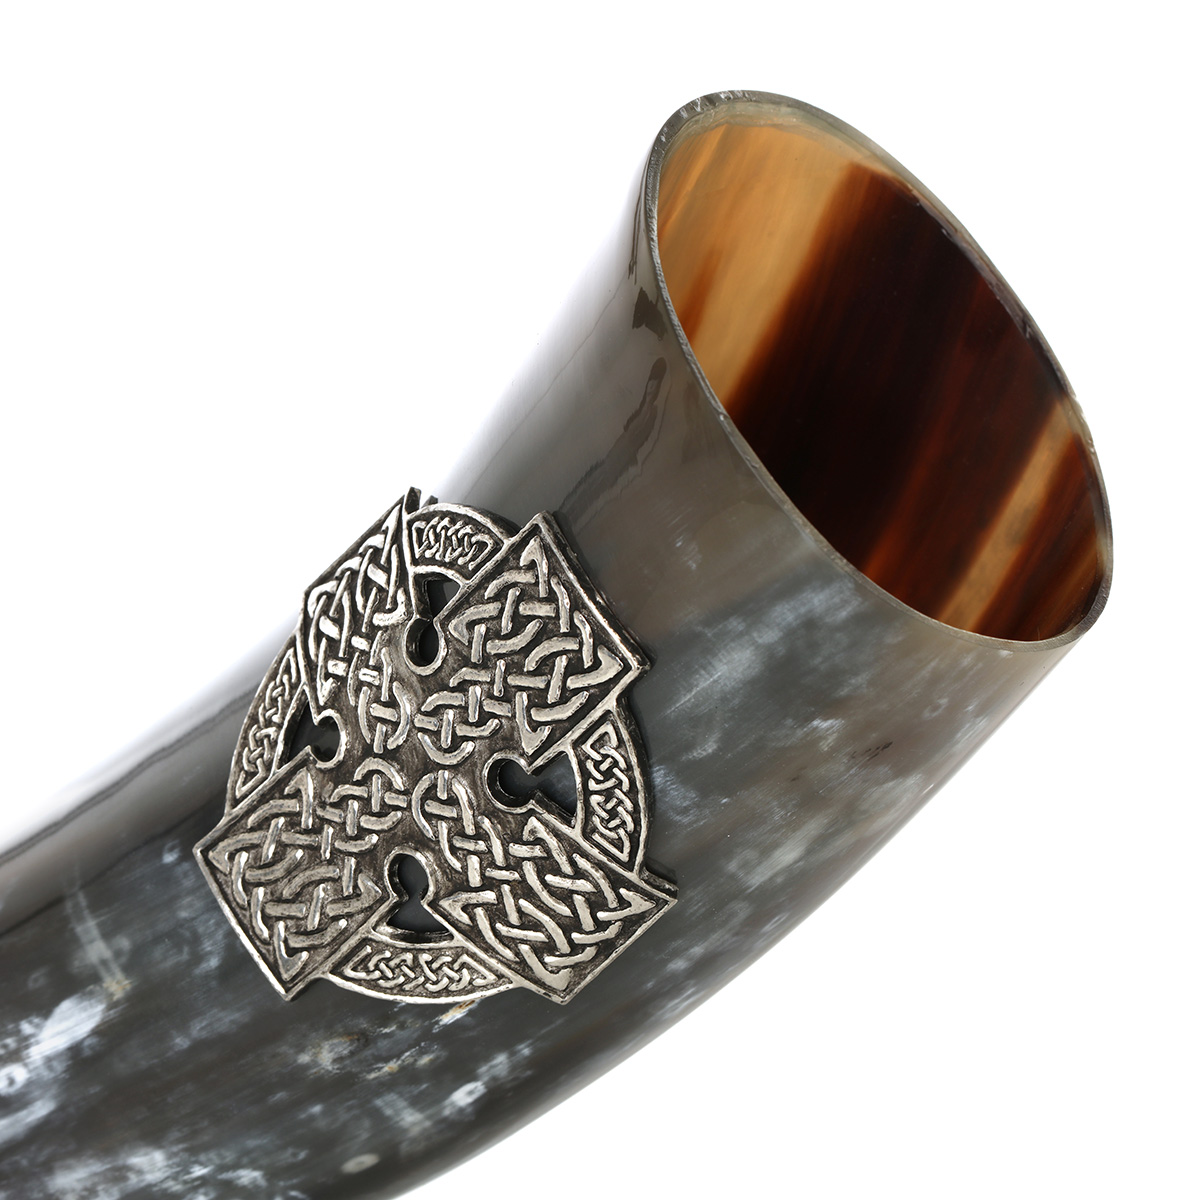 Poliertes Trinkhorn mit keltischem Kreuz aus Zinn - ca. 0,5 Liter